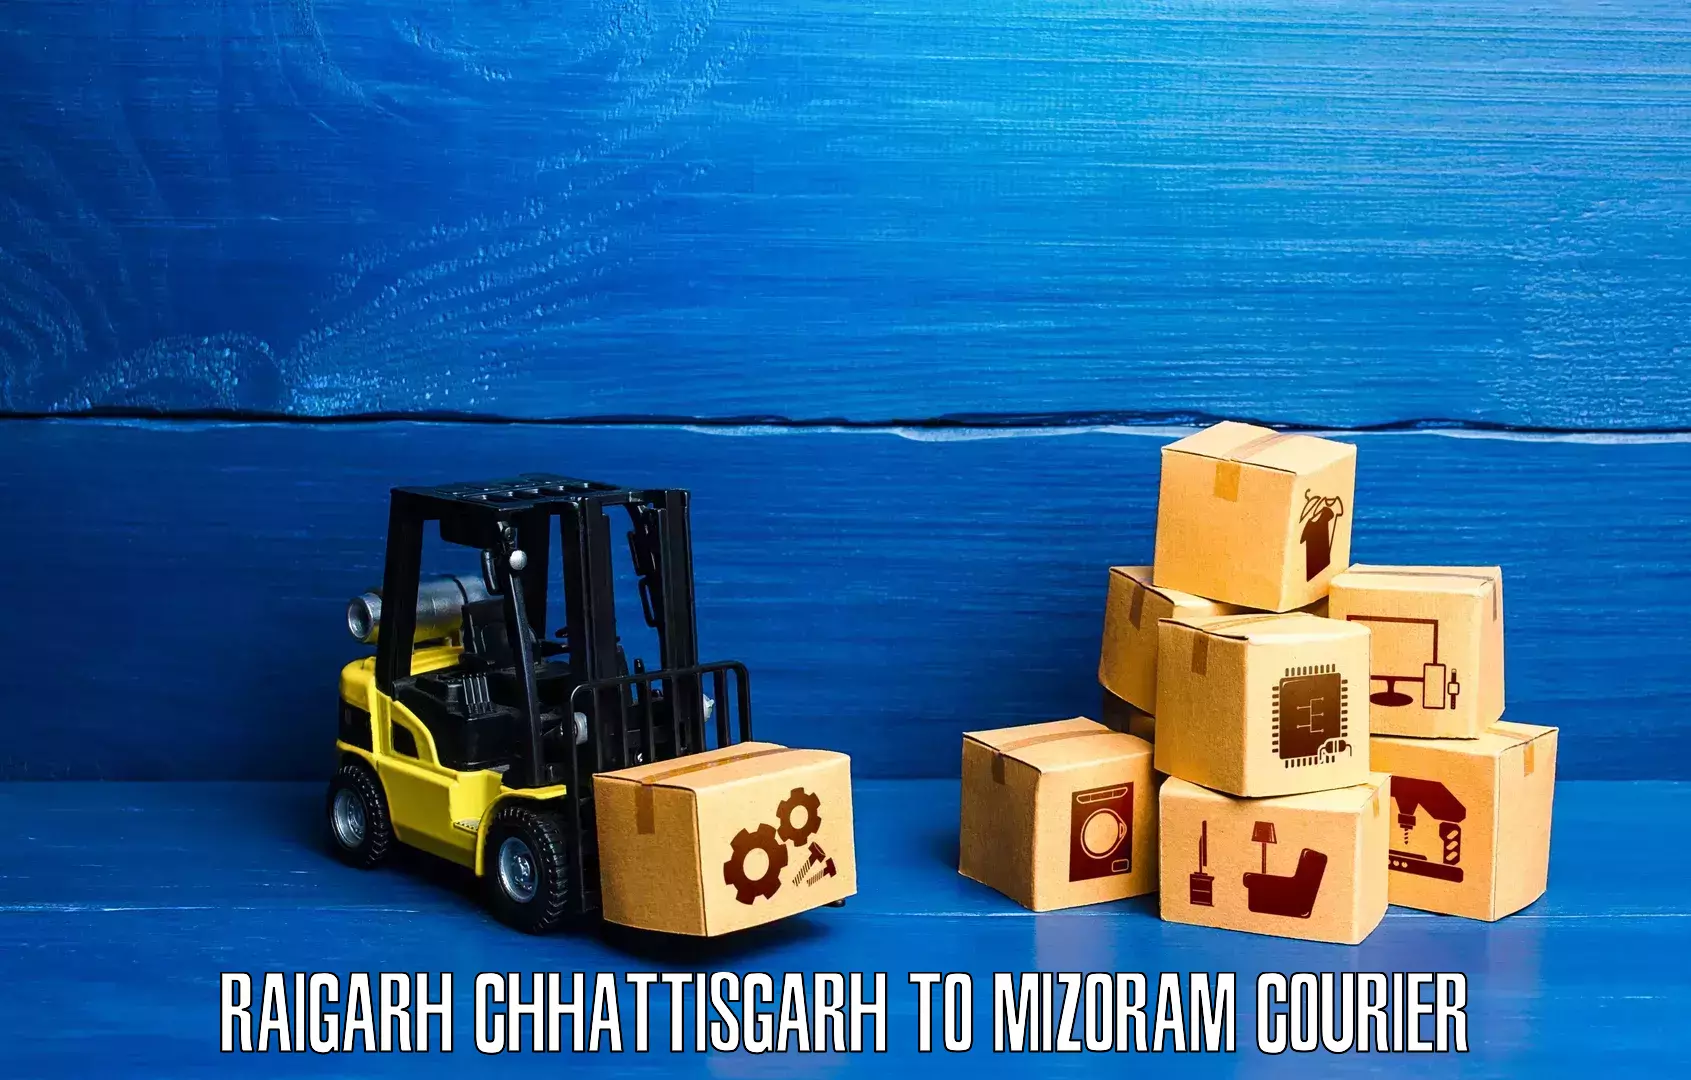 Cash on delivery service Raigarh Chhattisgarh to Mizoram